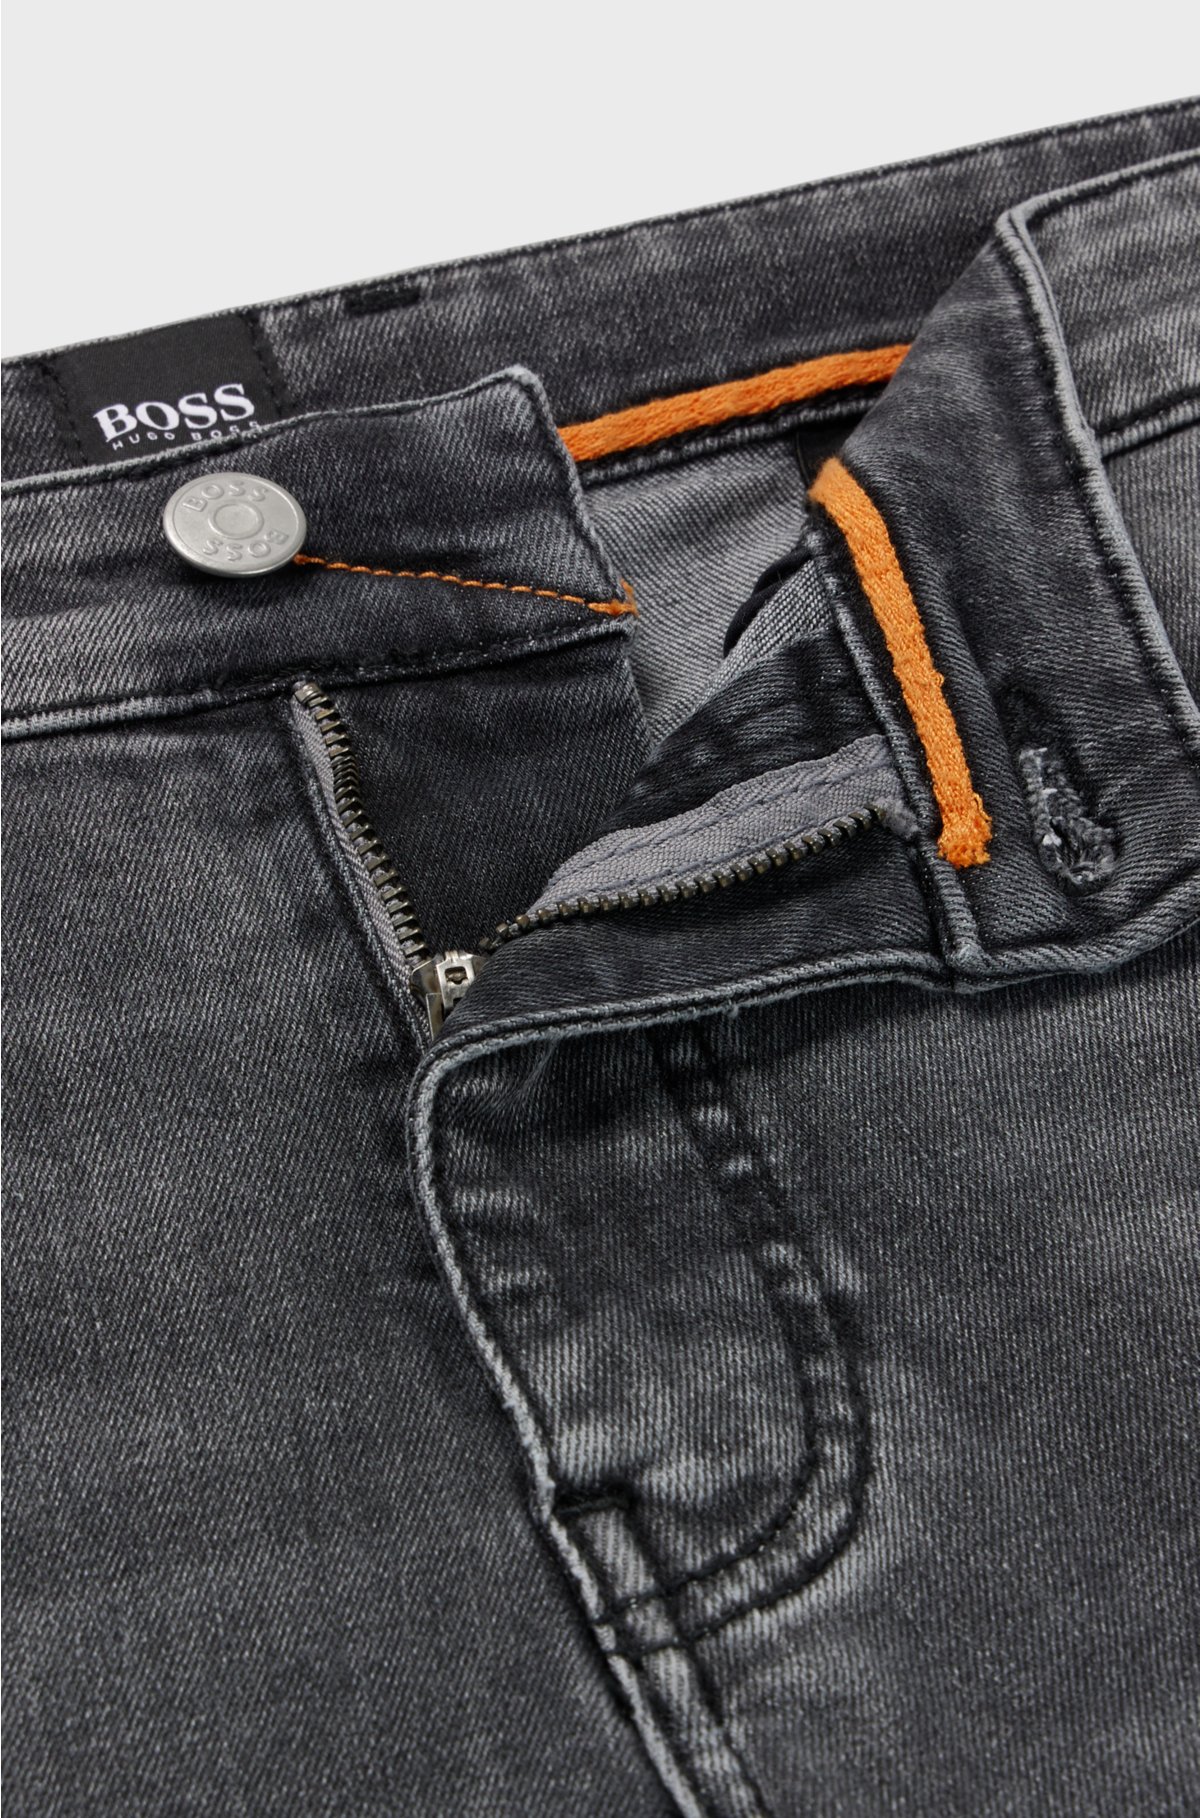 BOSS - jeans in denim gray super-stretch Slim-fit